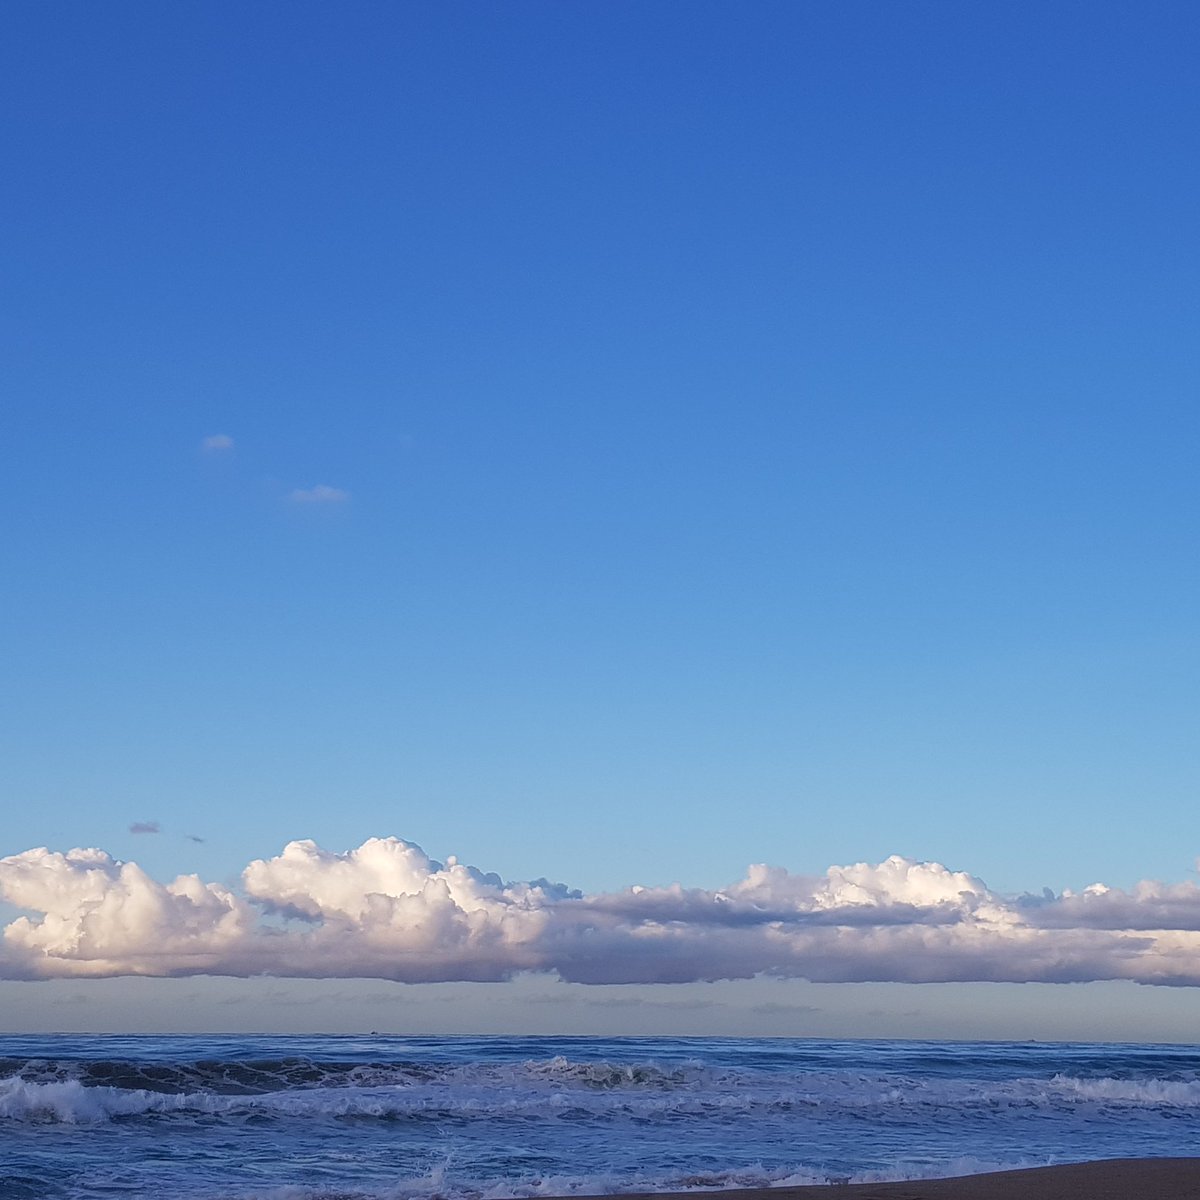 T'espero entre les dues línies del blau més intens. La passió del mar i la calma del cel. #bondia #casa #llar #elmeublau